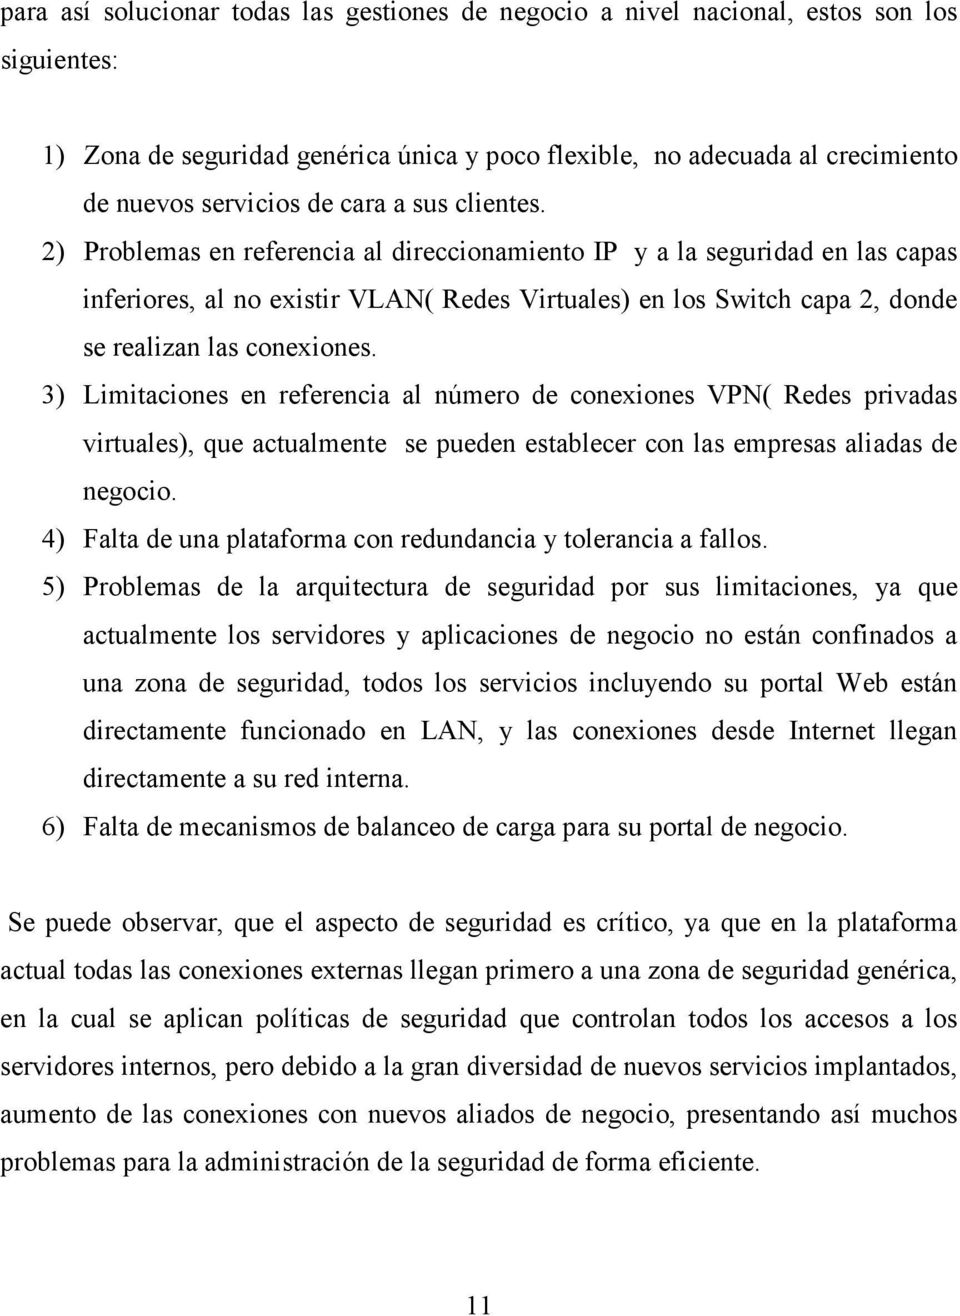 2) Problemas en referencia al direccionamiento IP y a la seguridad en las capas inferiores, al no existir VLAN( Redes Virtuales) en los Switch capa 2, donde se realizan las conexiones.